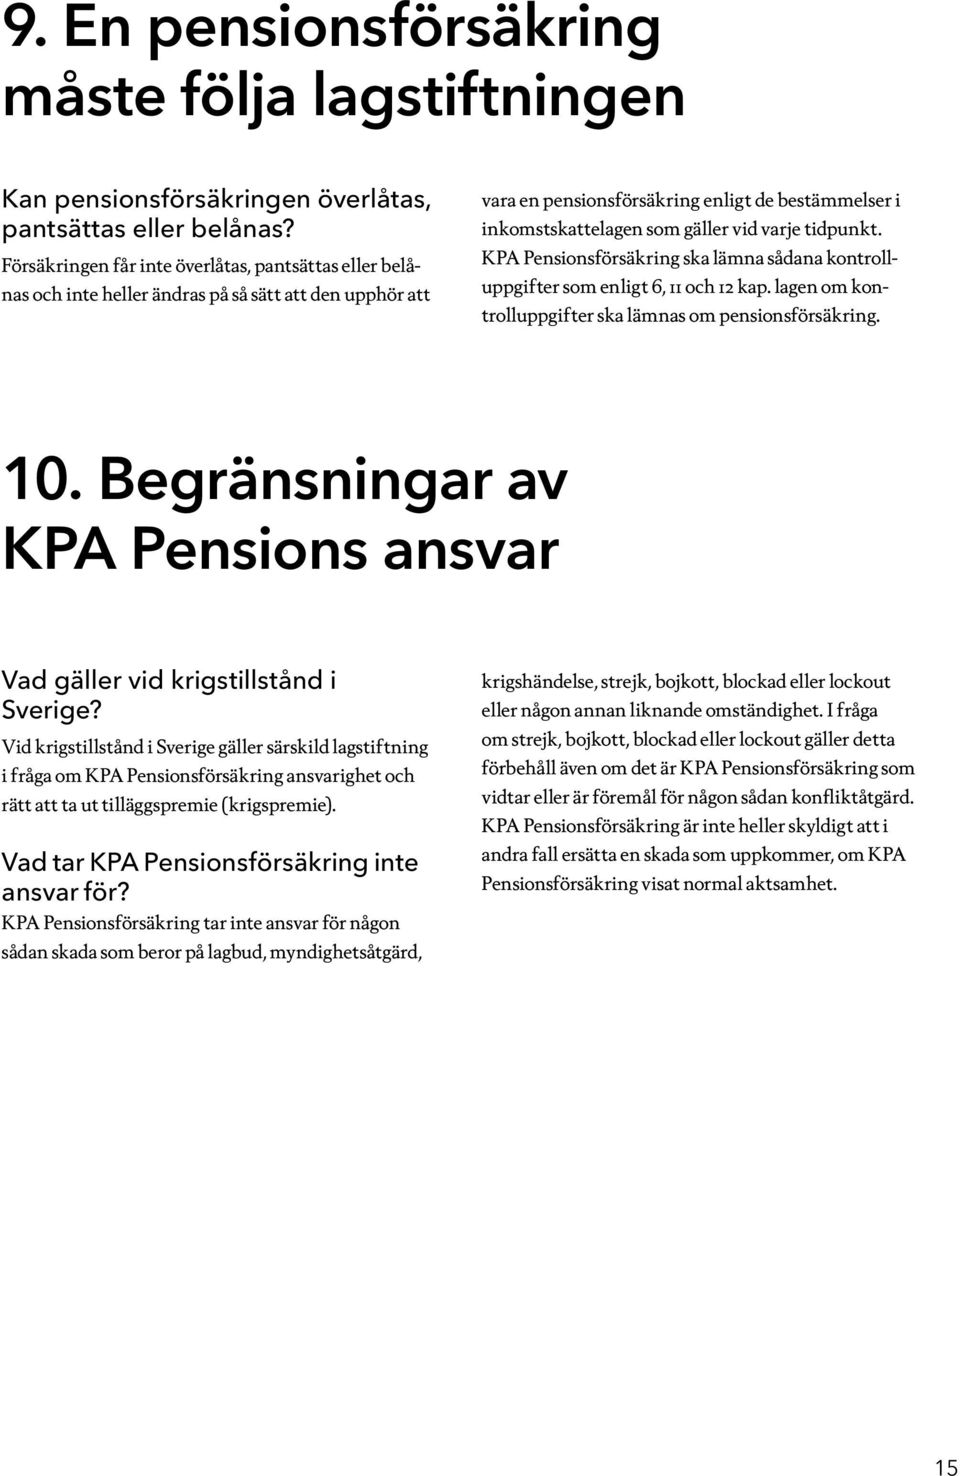 varje tidpunkt. KPA Pensionsförsäkring ska lämna sådana kontrolluppgifter som enligt 6, 11 och 12 kap. lagen om kontrolluppgifter ska lämnas om pensionsförsäkring. 10.